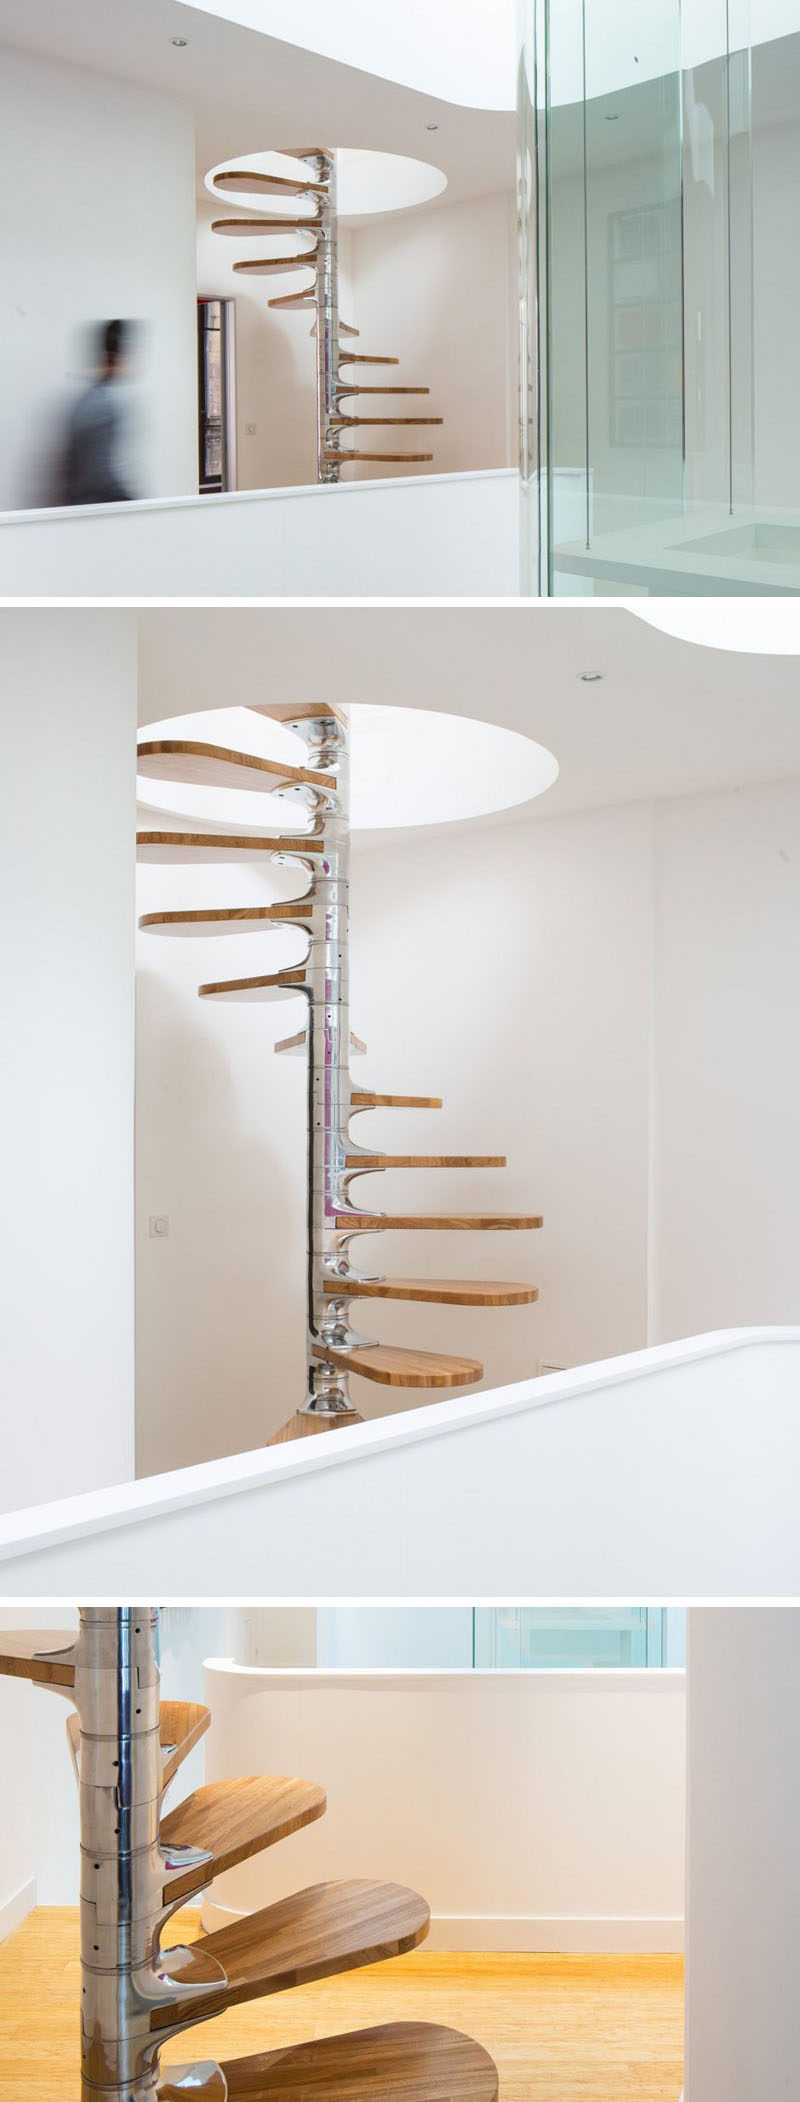 Cầu thang xoắn ốc nhỏ hiện đại này được làm từ kim loại đánh bóng với các bậc cầu thang bằng gỗ bao quanh nó.  Cầu thang đi qua một lỗ trên trần nhà để lên tầng trên.  #SpiralStairs #SpiralStaircase #ModernSpiralStairs